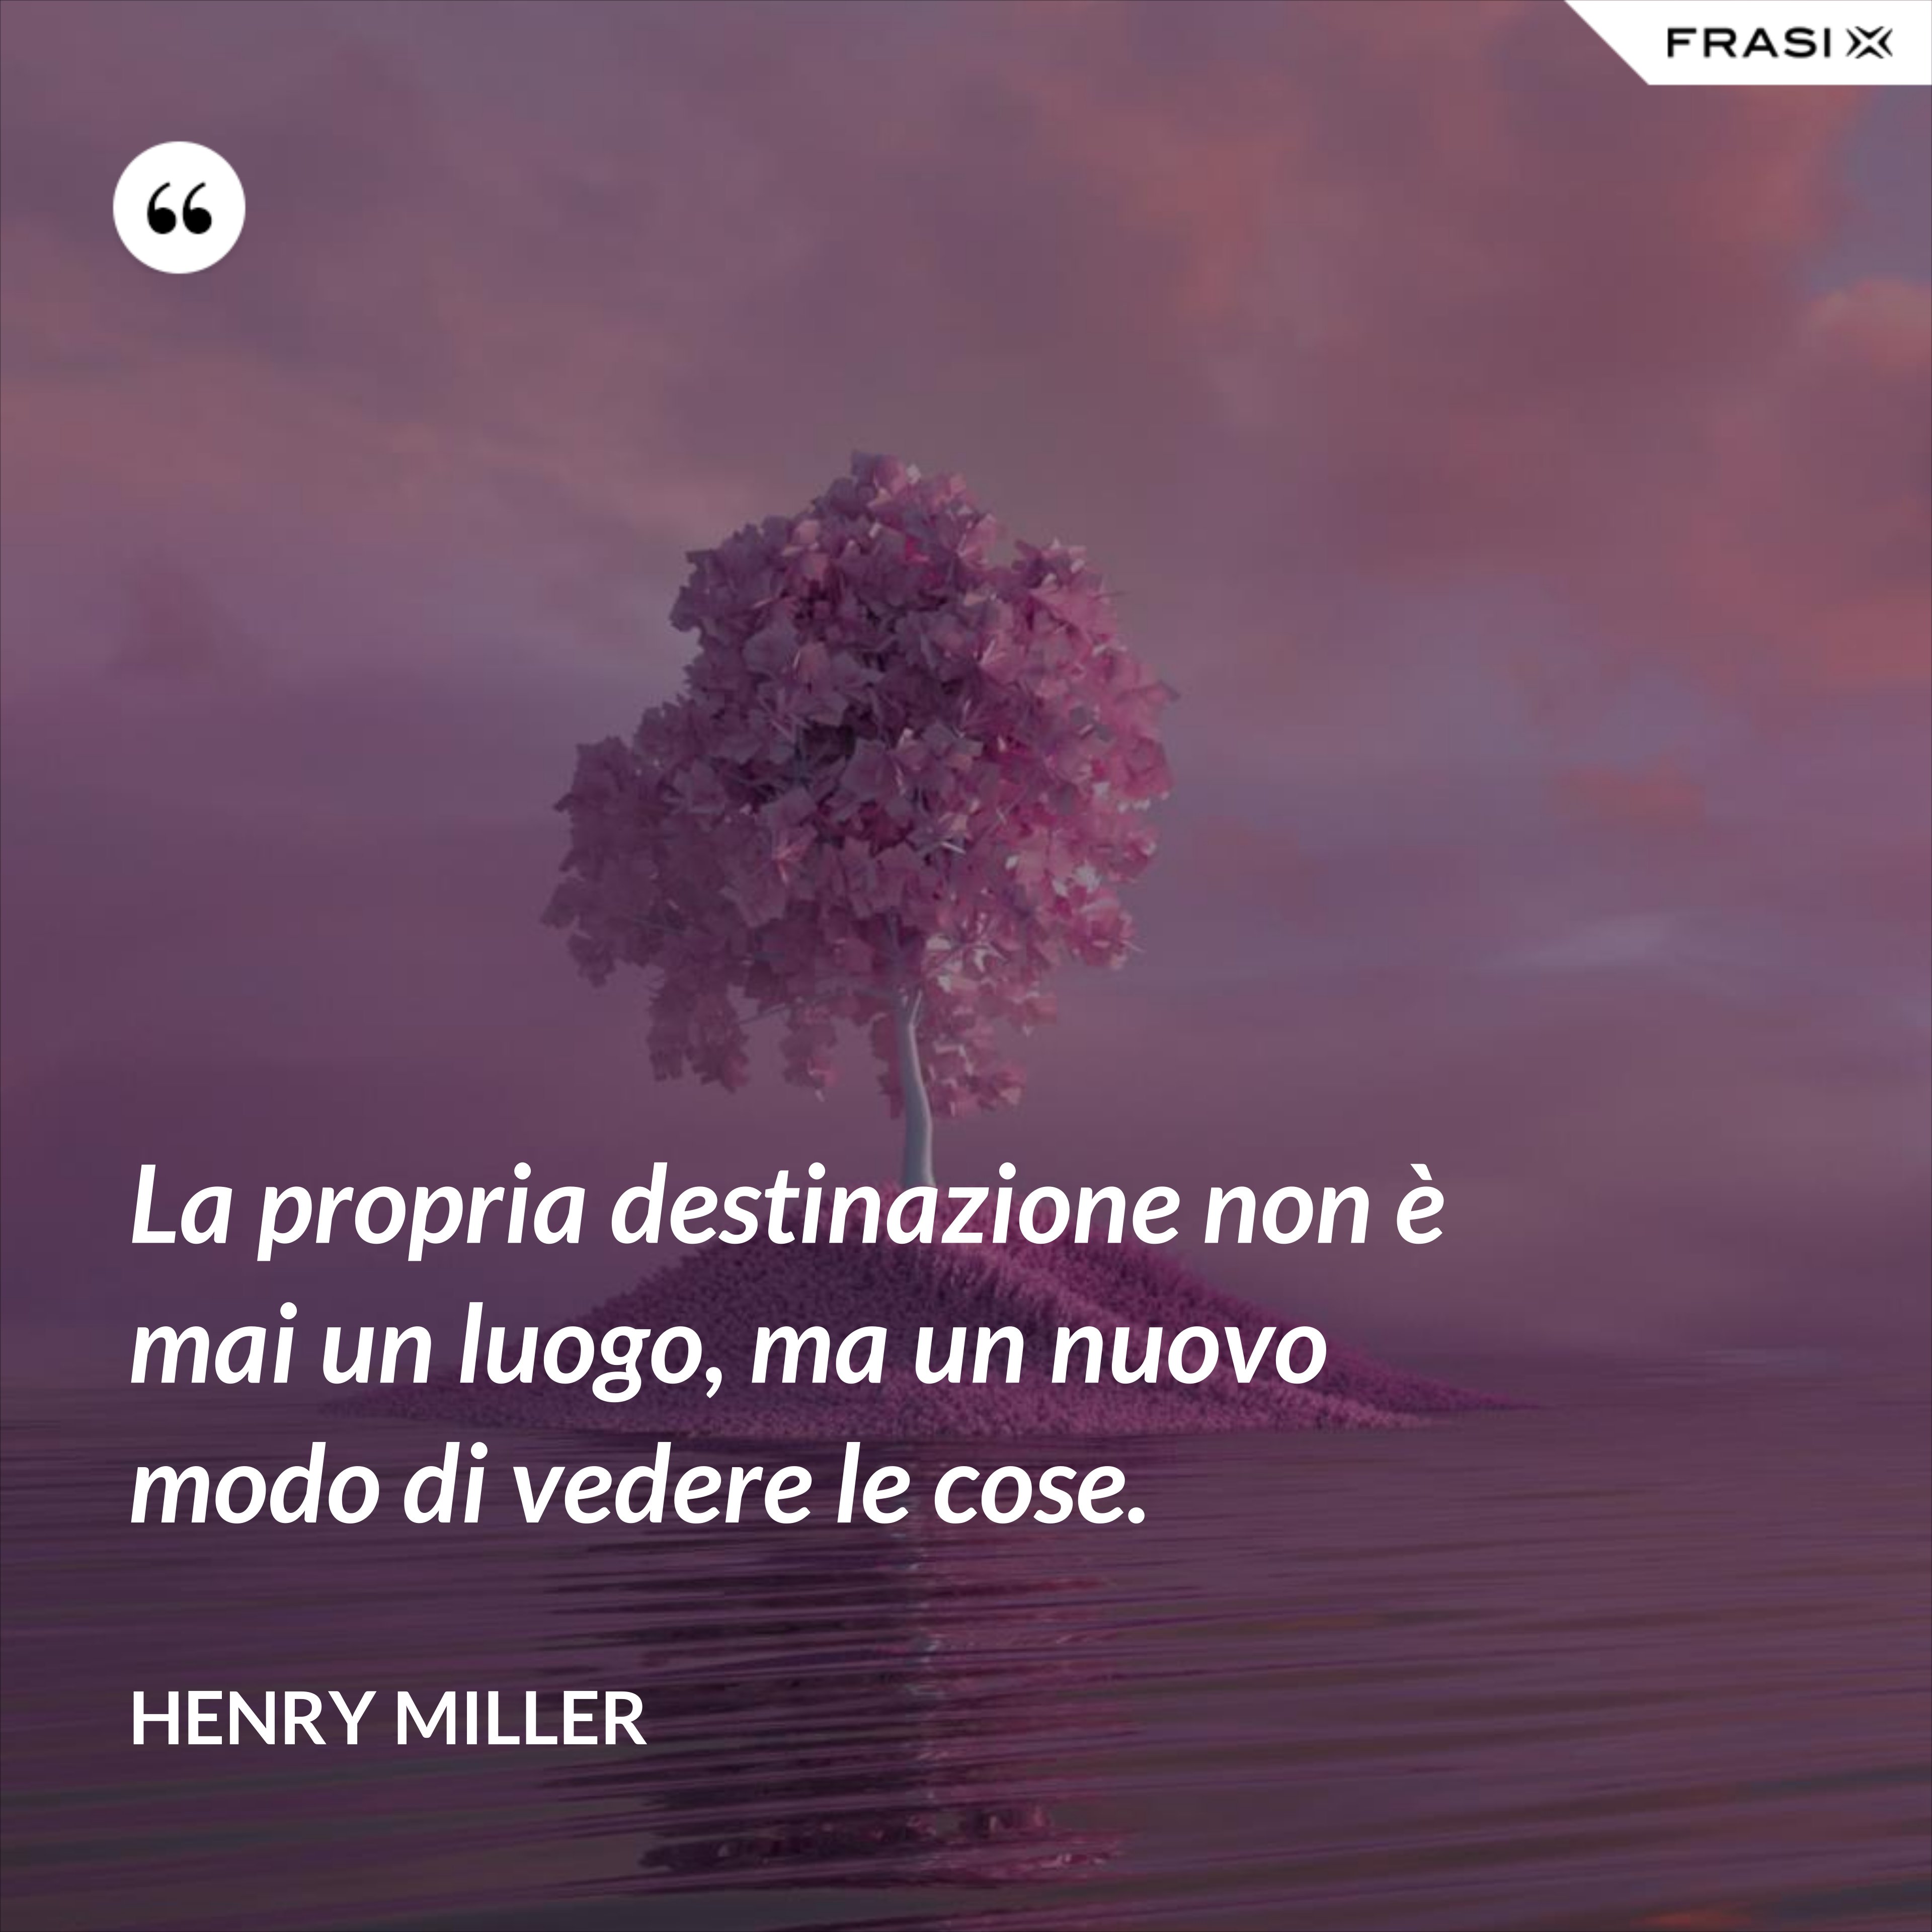 La propria destinazione non è mai un luogo, ma un nuovo modo di vedere le cose. - Henry Miller